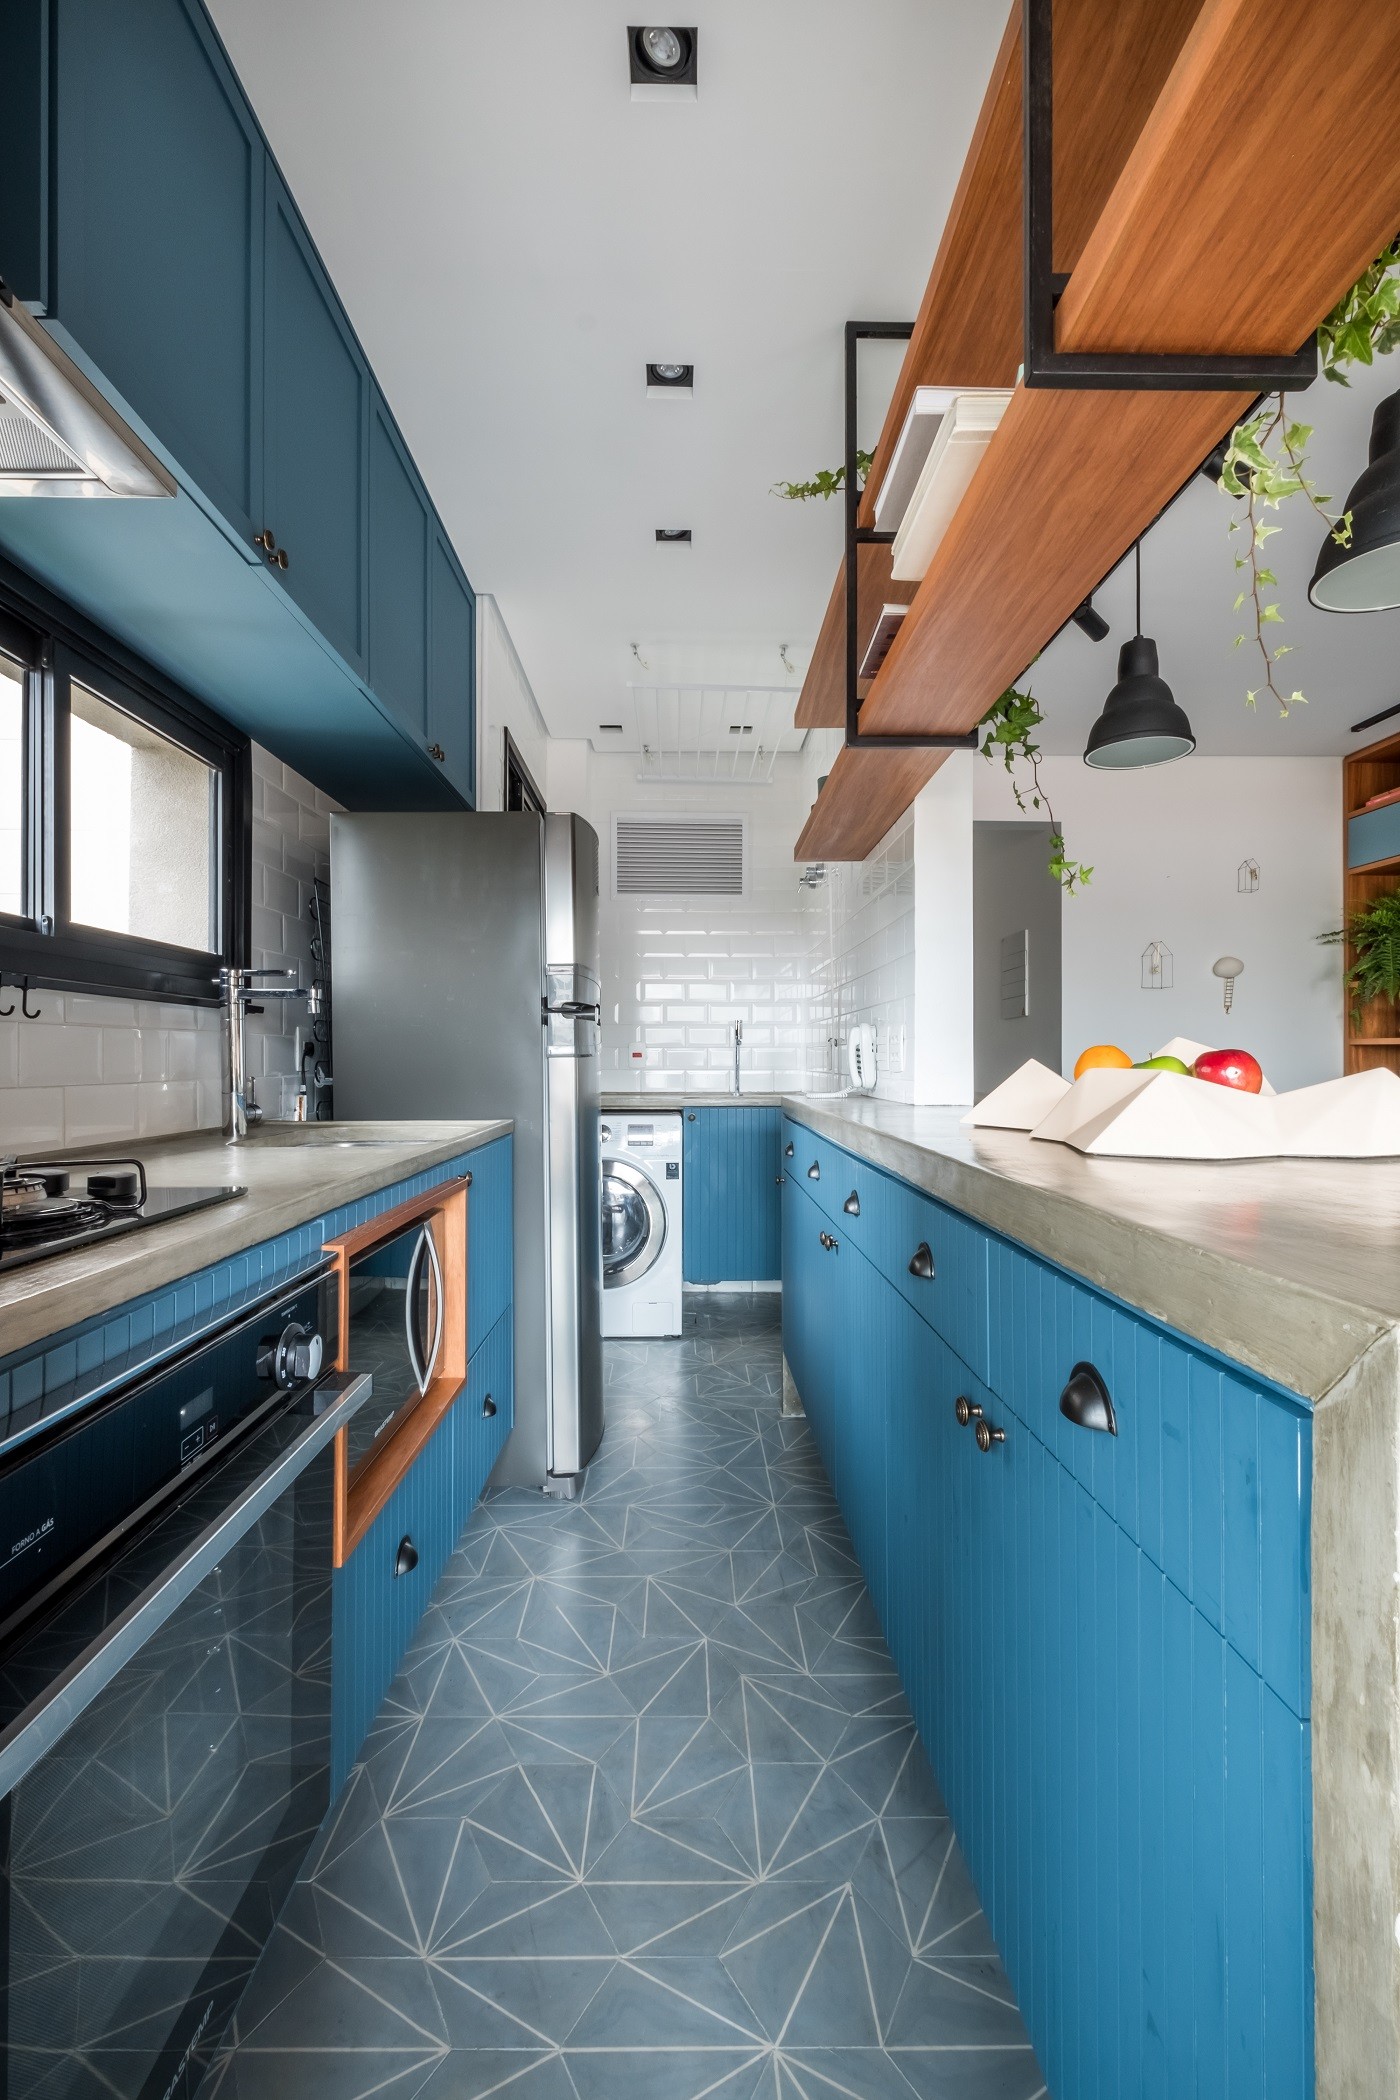 Décor do dia: cozinha integrada azul com piso geométrico (Foto: Nathalie Artaxo)